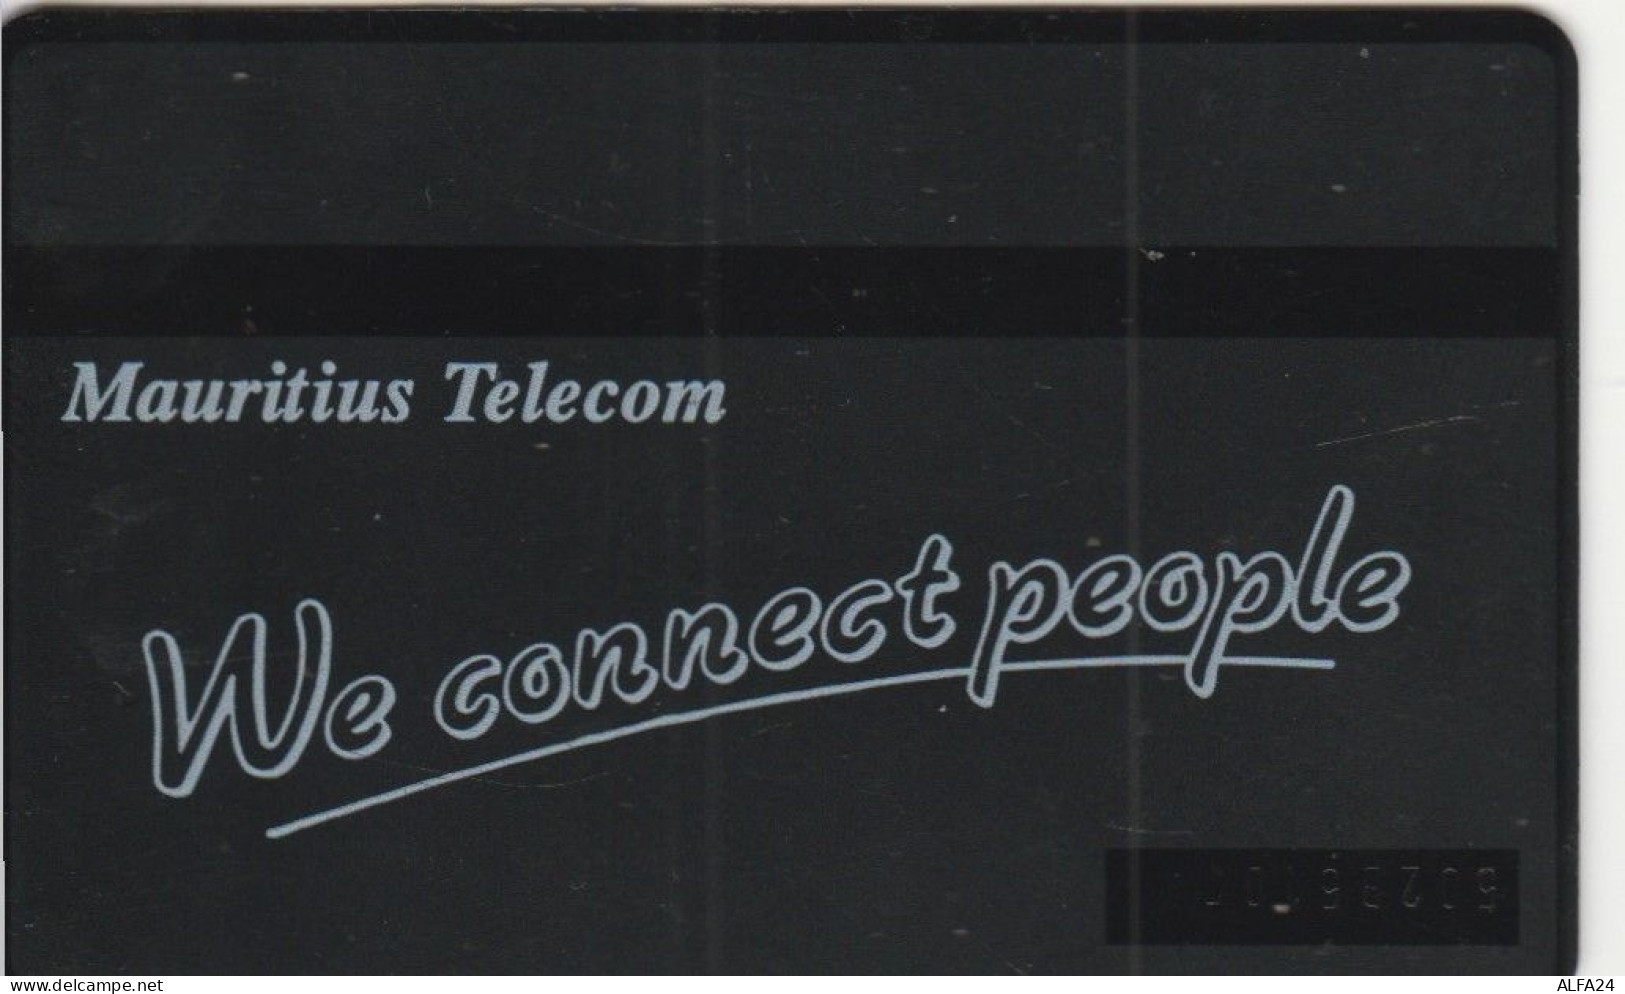 PHONE CARD MAURITIUS  (E98.30.1 - Mauritius